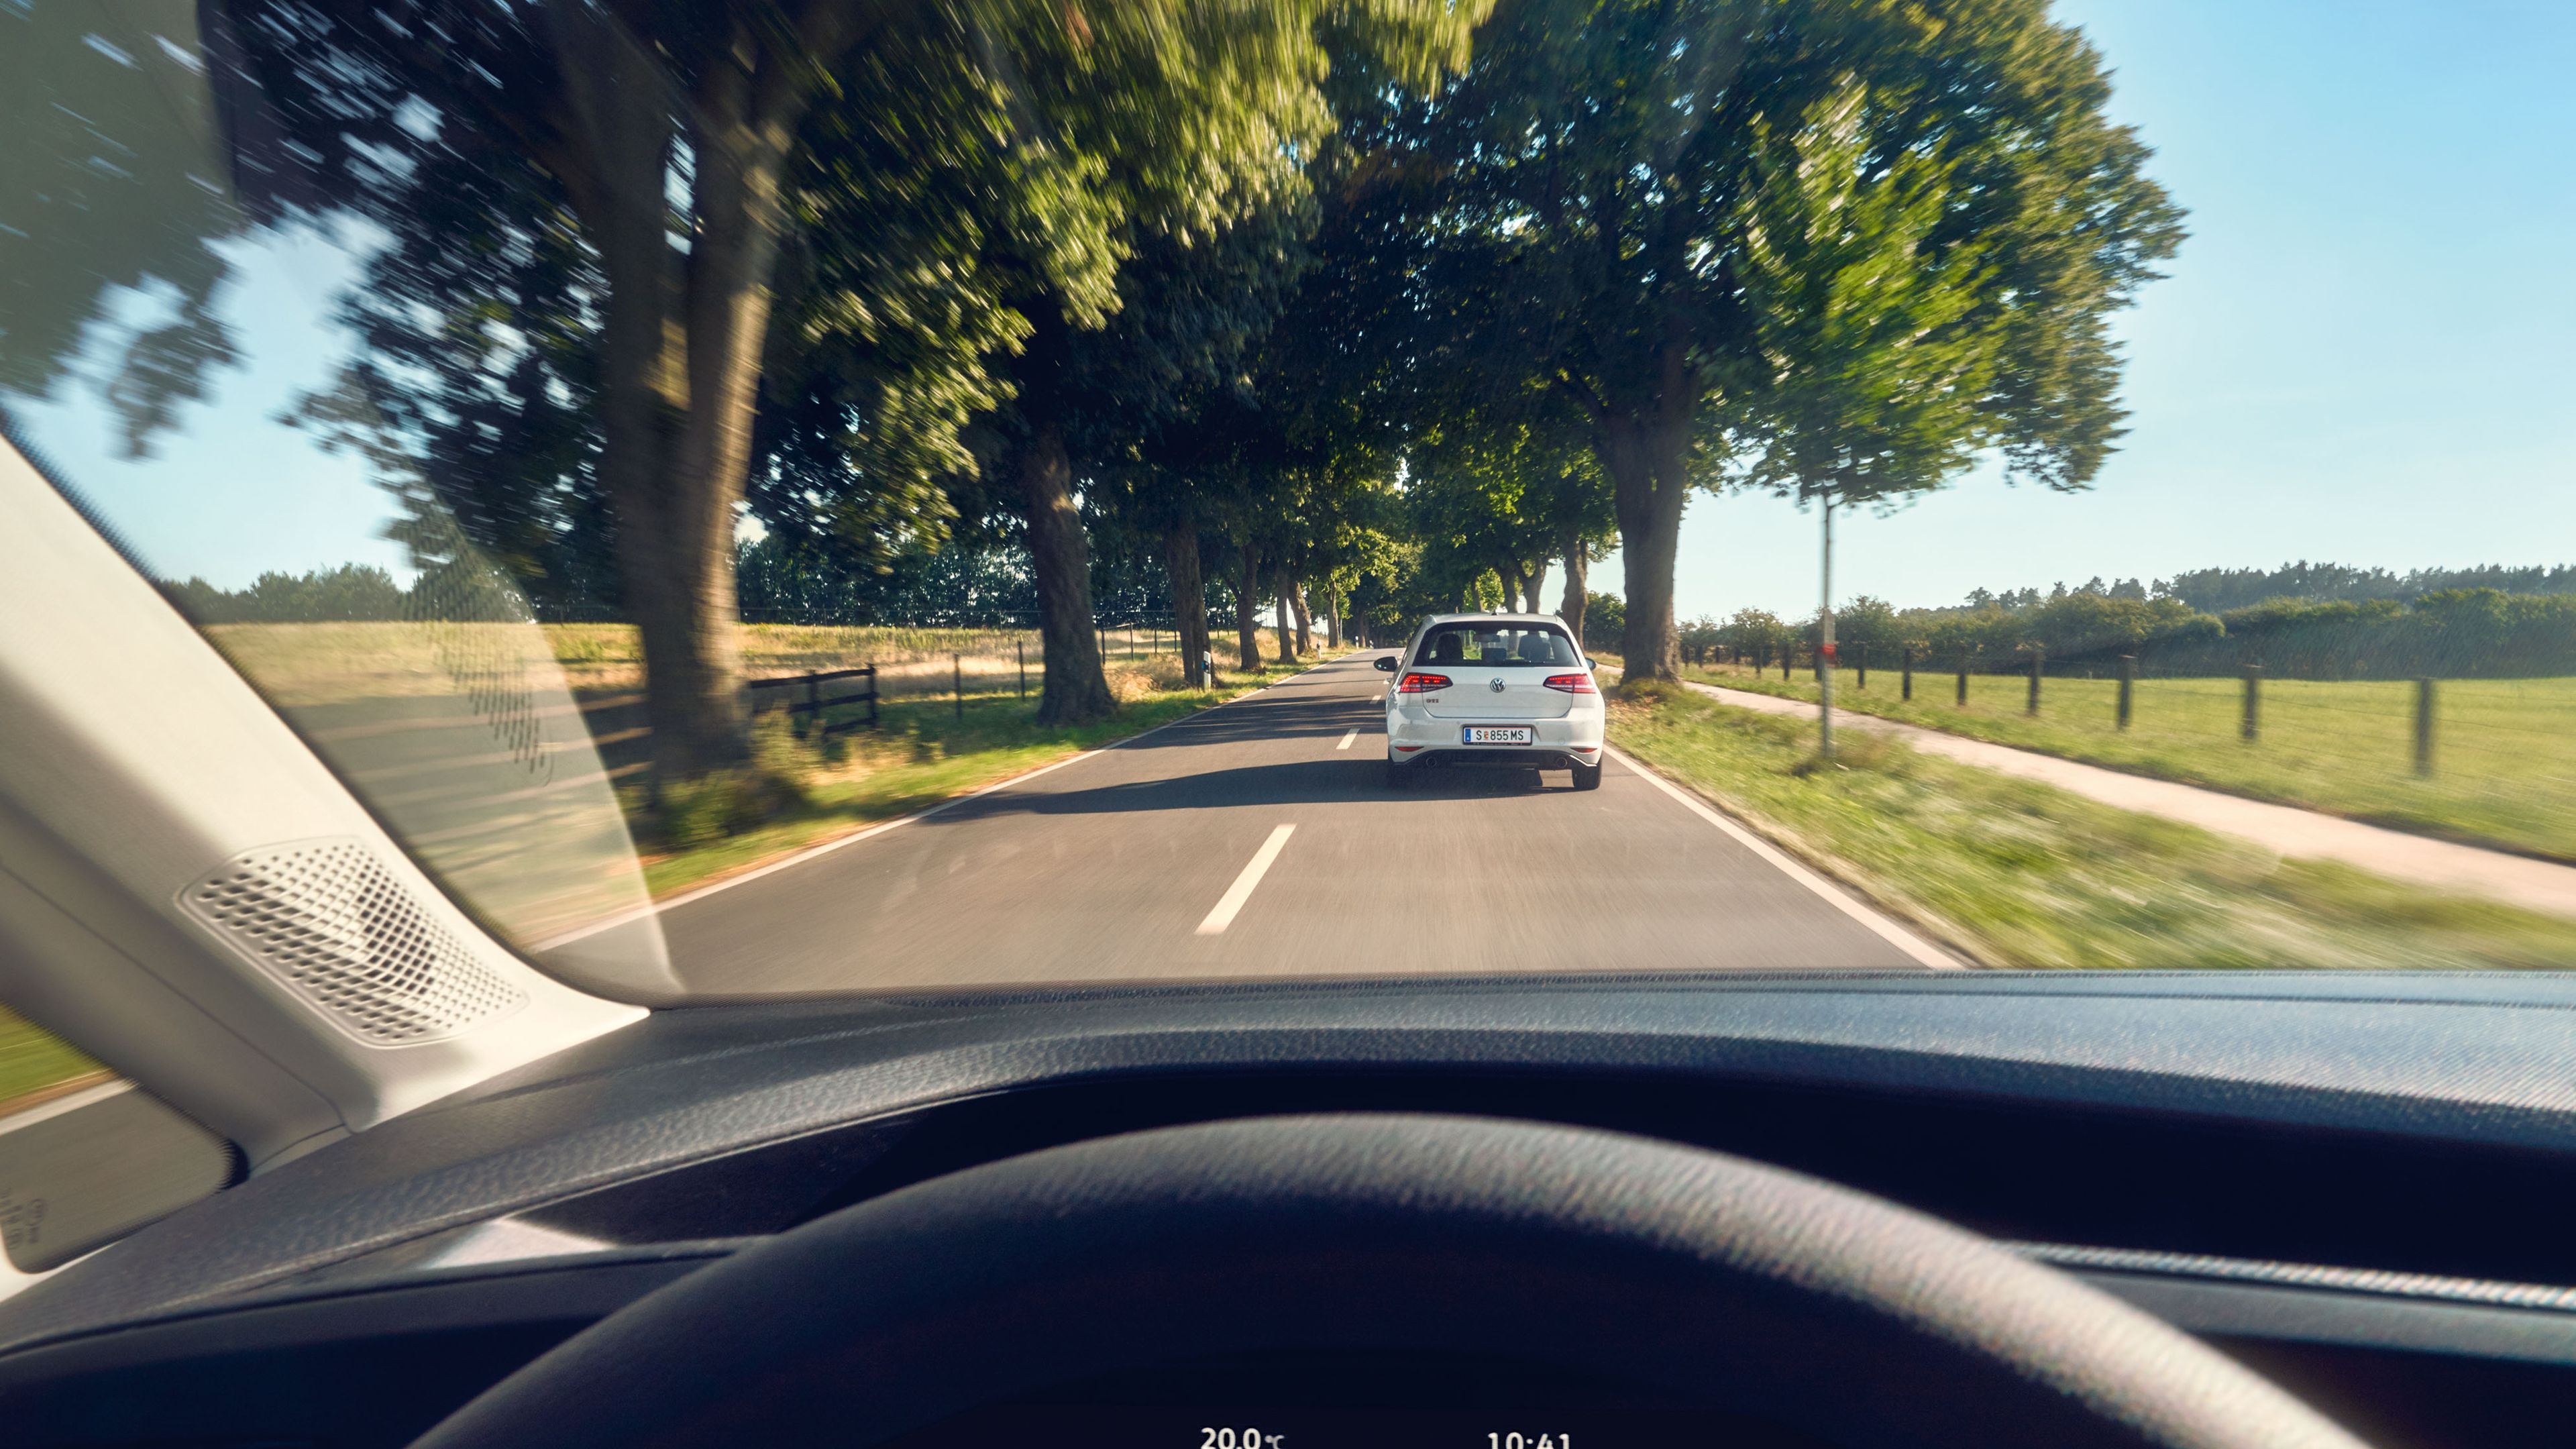 Ein VW Caddy fährt auf einer Landstraße hinter einem VW Golf.